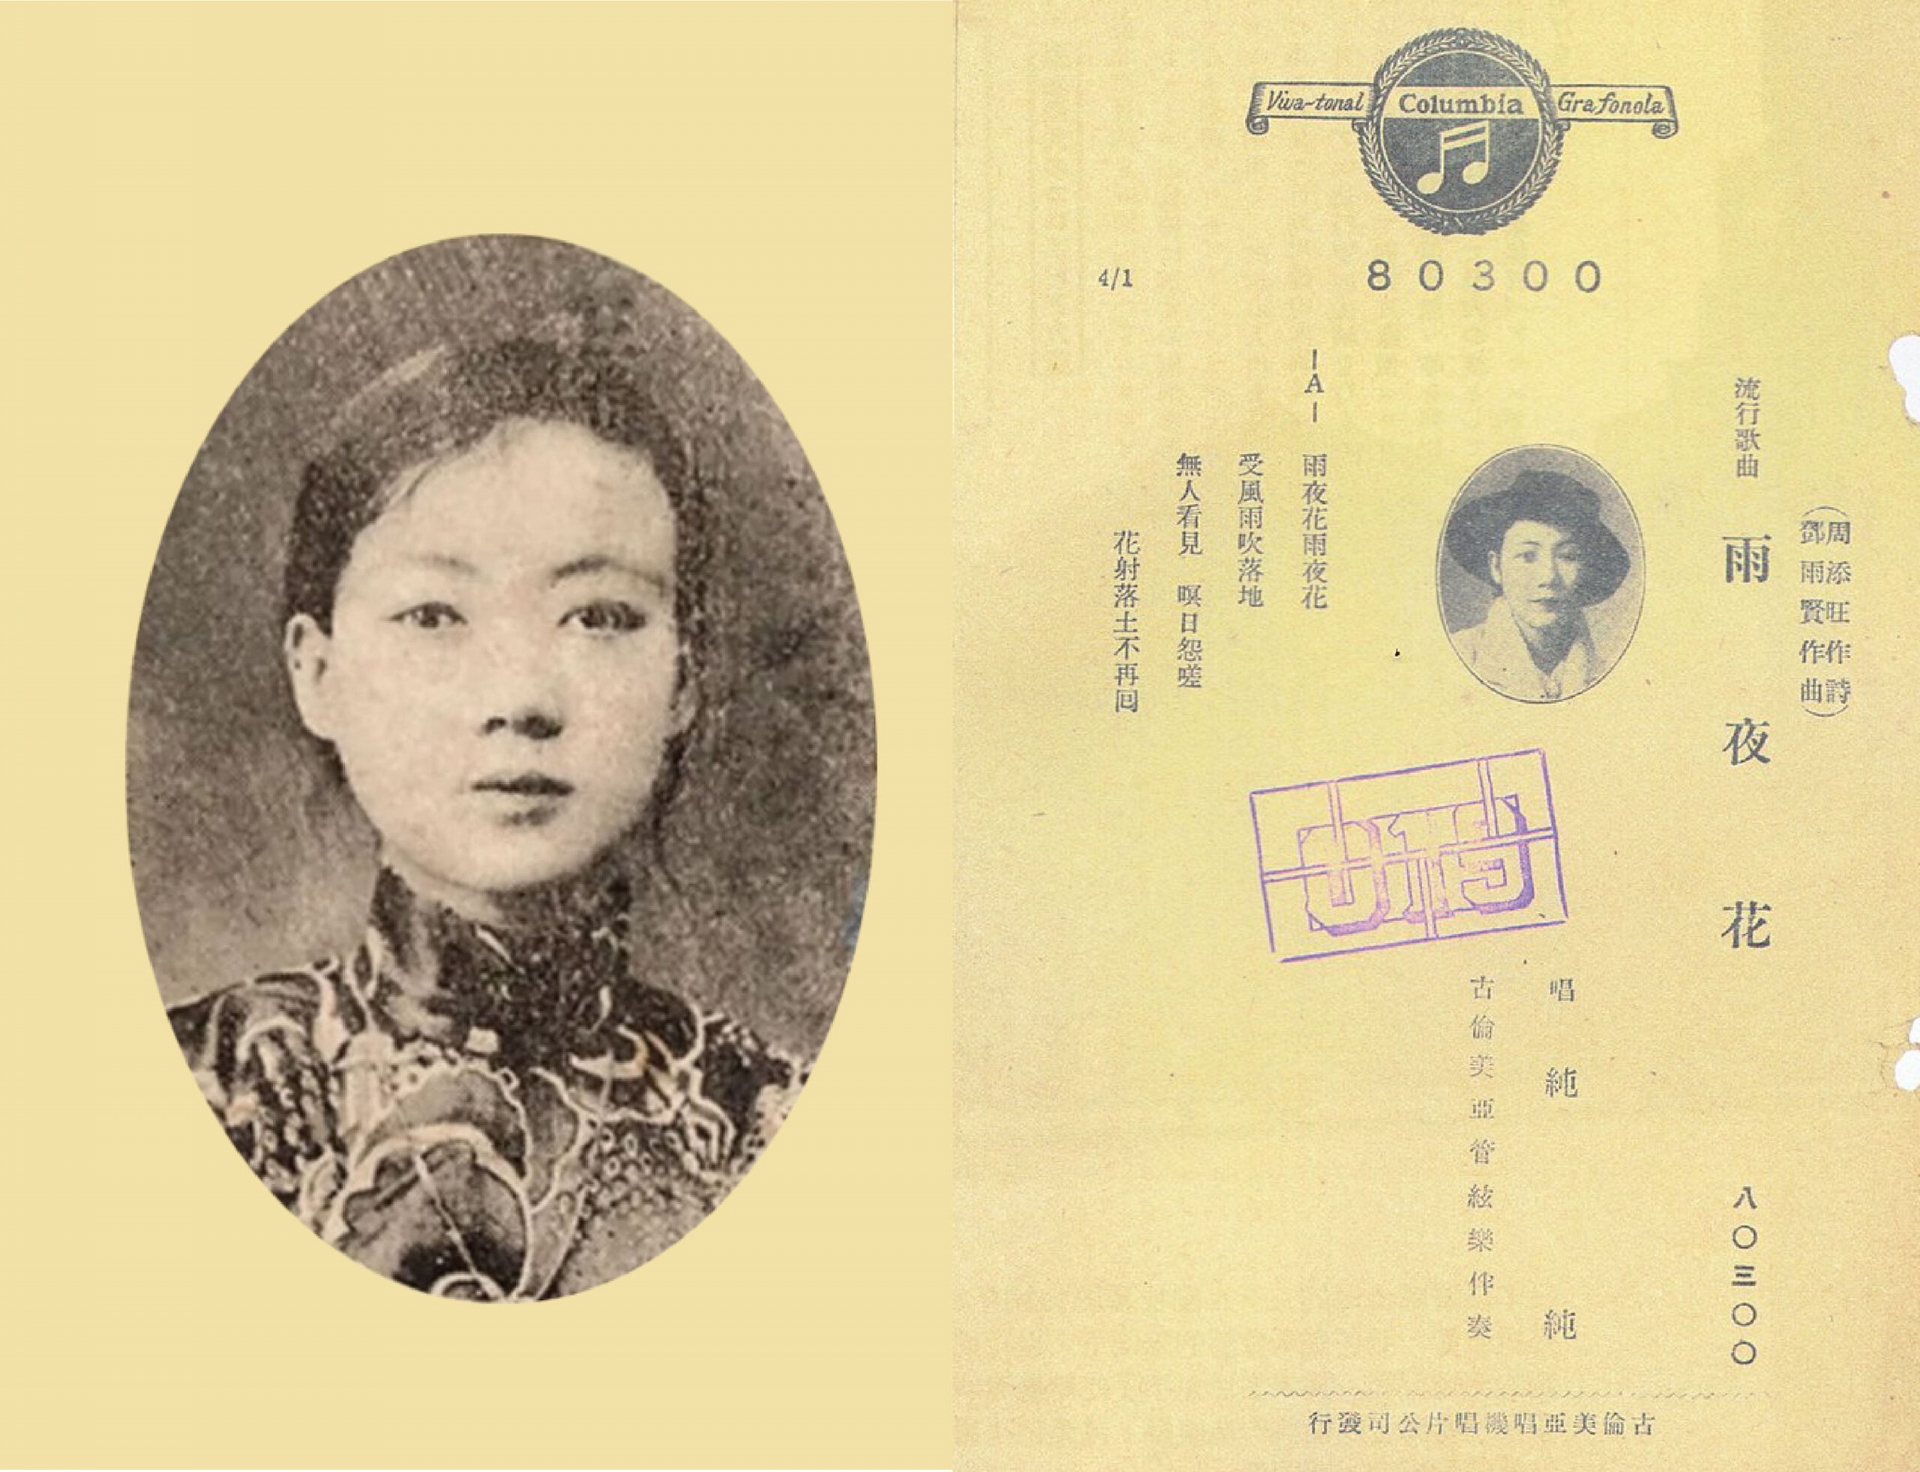 純純堪稱是臺灣流行樂壇第一位天后。她原本是歌仔戲班演員，後來被臺灣首家唱片公司「古倫美亞」延攬，錄製了多張臺語和日語唱片，唱紅多首 1930-1940 年代臺語經典流行歌，如〈望春風〉、〈雨夜花〉、〈跳舞時代〉、〈桃花泣血記〉等。 圖│Wikimedia 